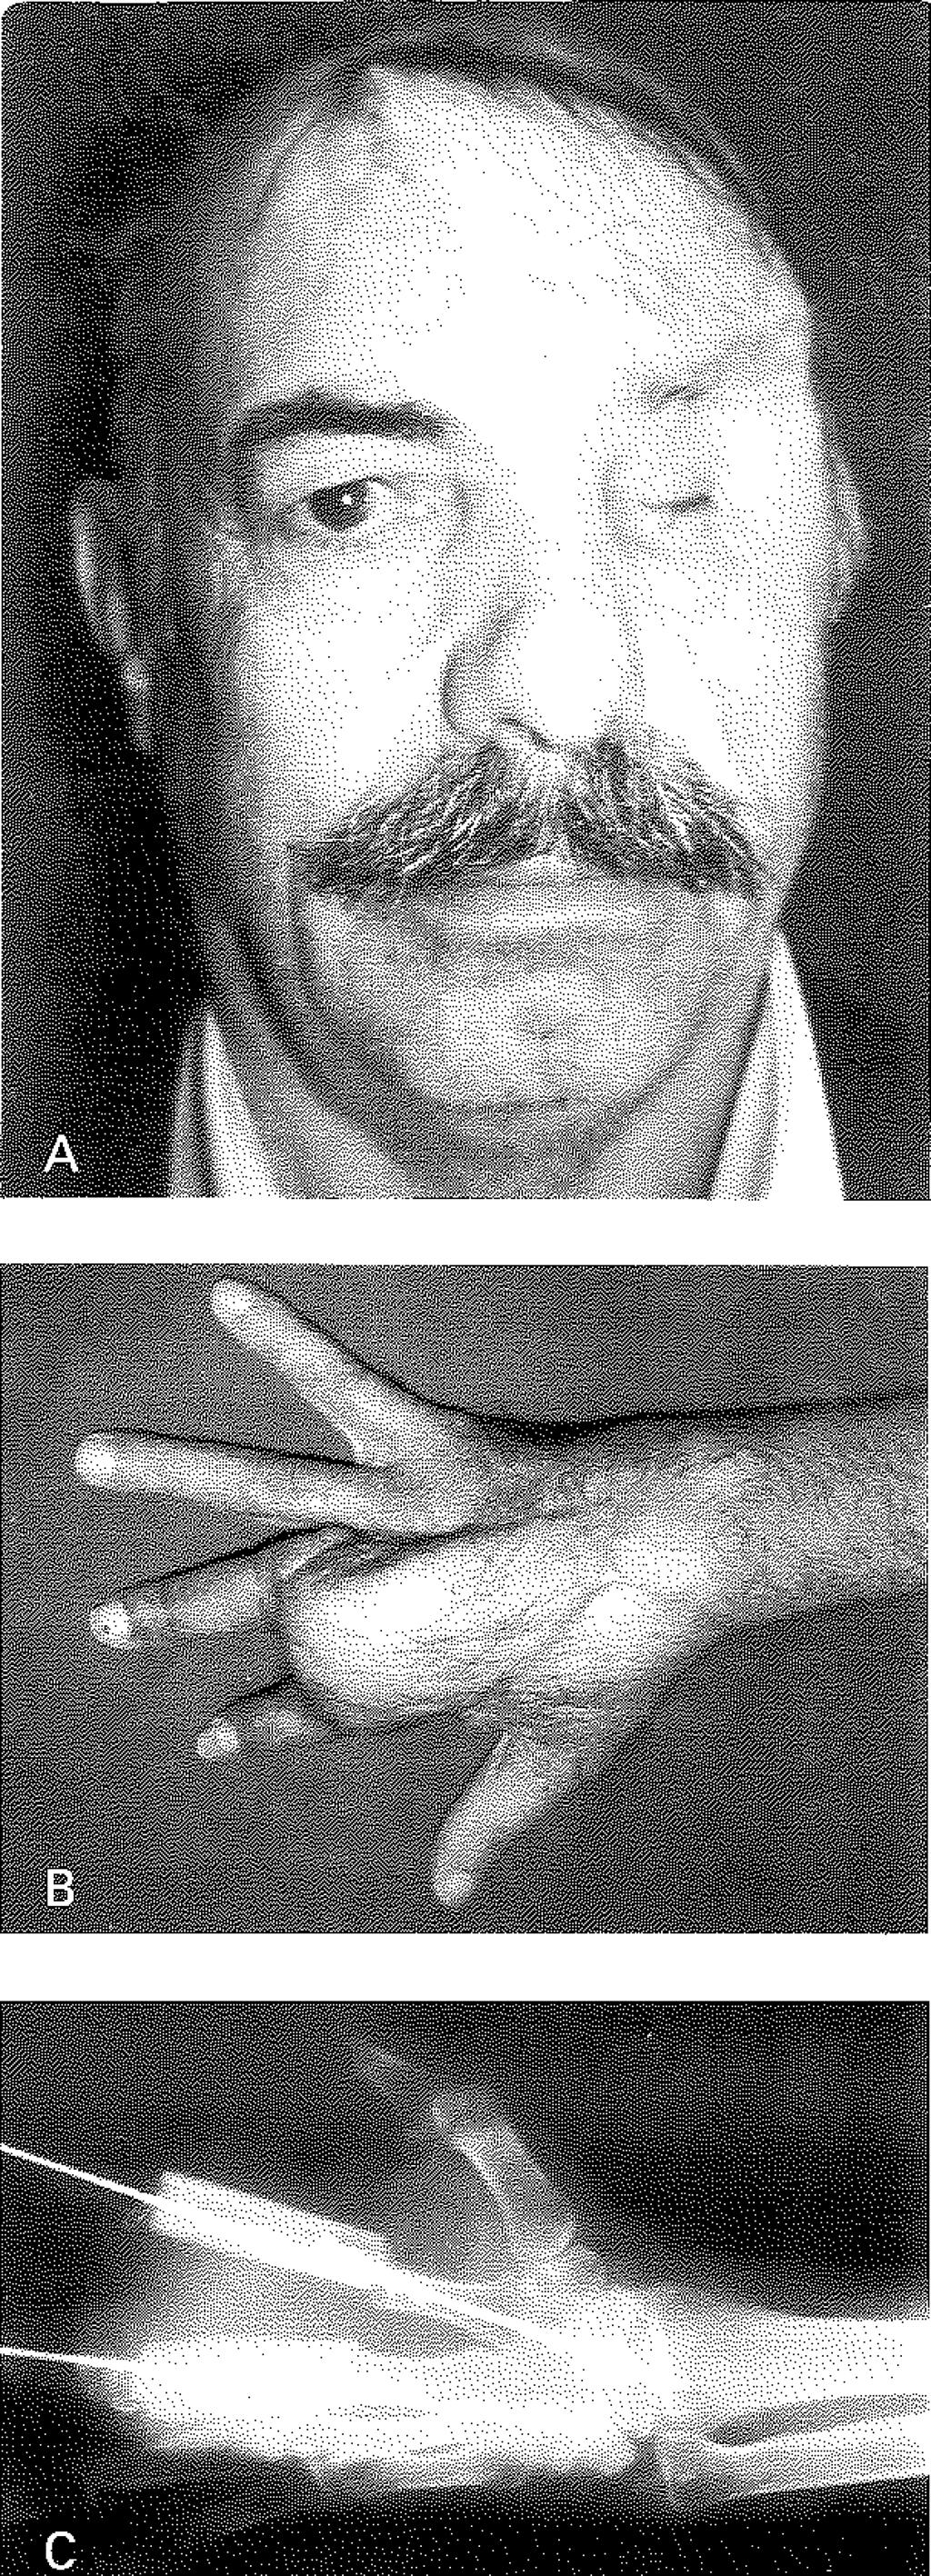 c: Aynı hastanın sağ elinin radyolojik görünümü Şekil 2A: Hastanın frontal bölgesindeki